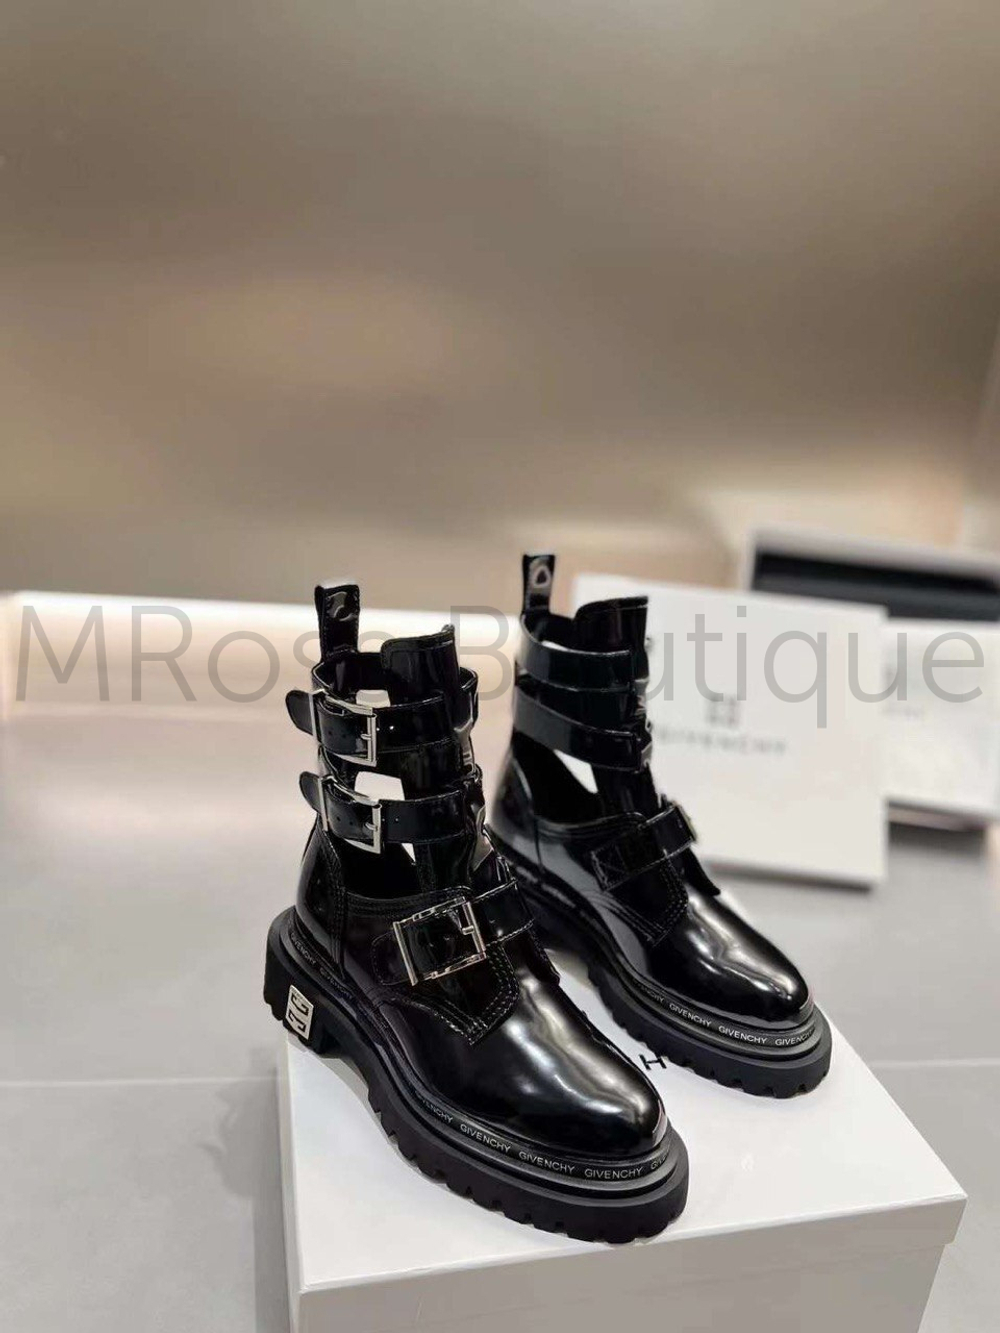 Женские лакированные ботинки Givenchy Живанши люкс класса